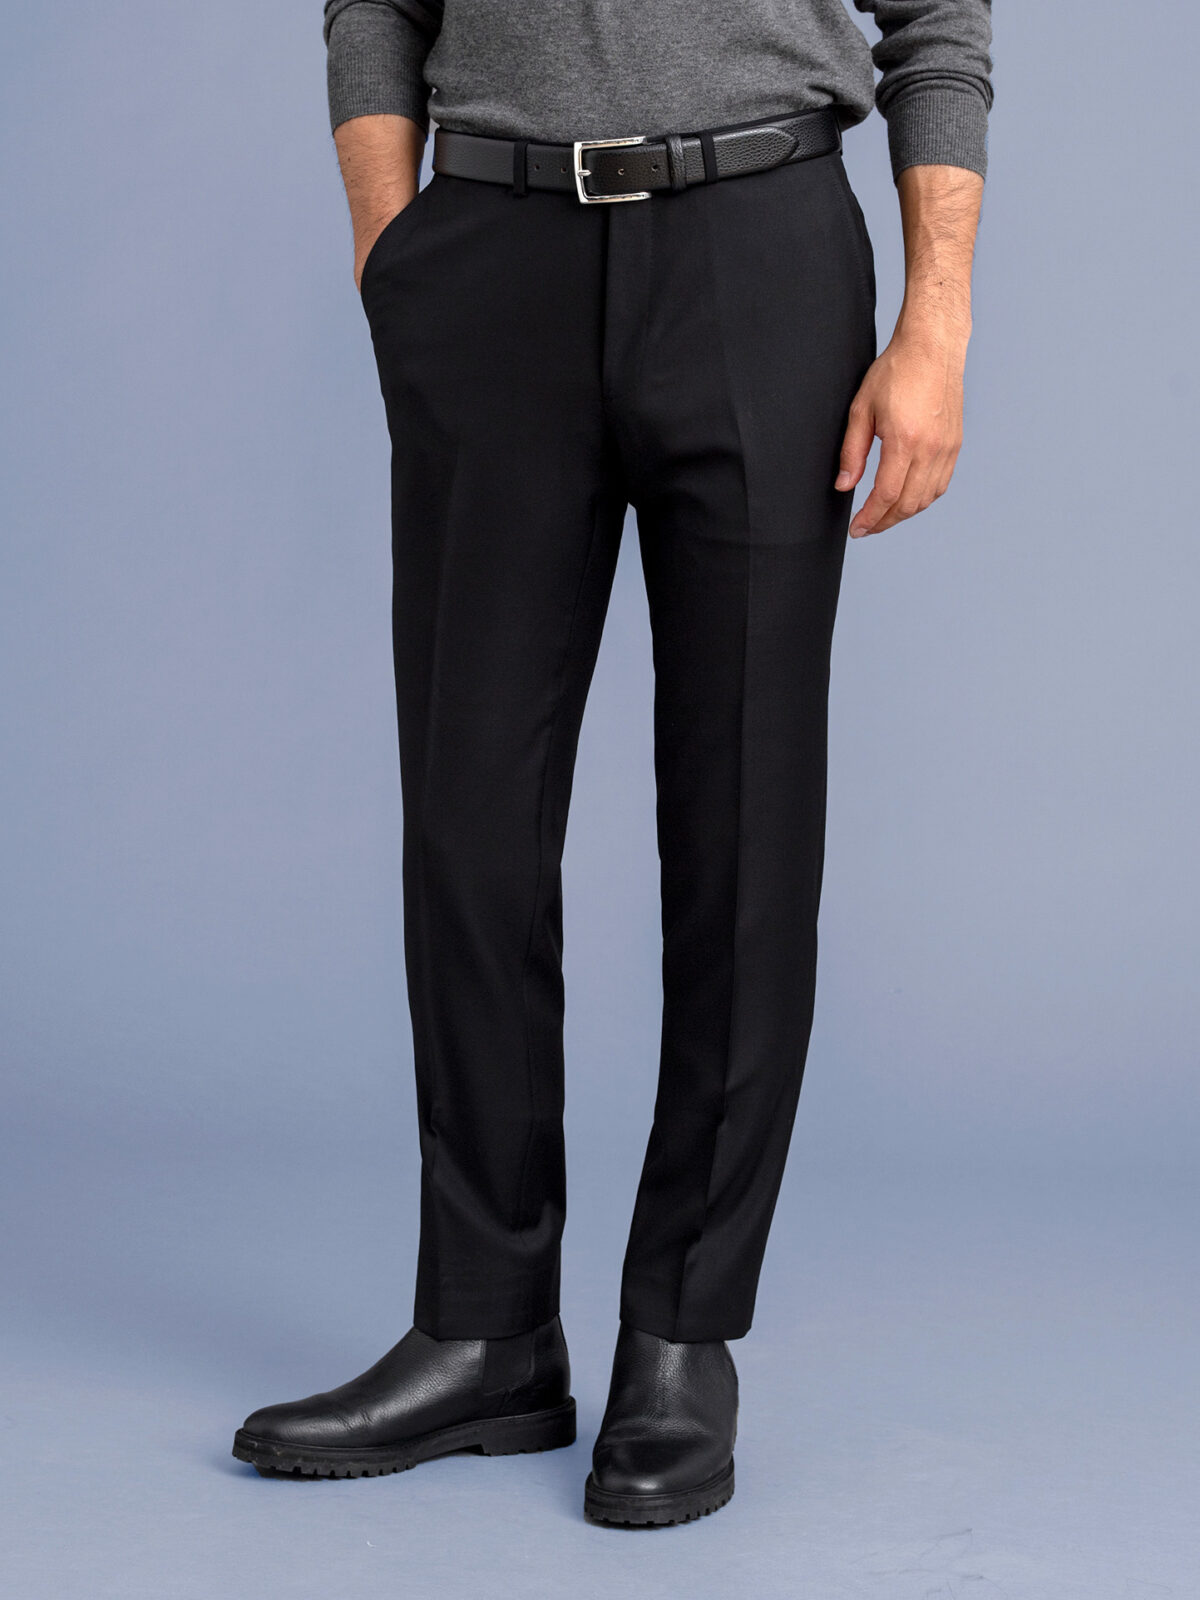 El Capitan Trouser - Black - Men's Pants Made in USA